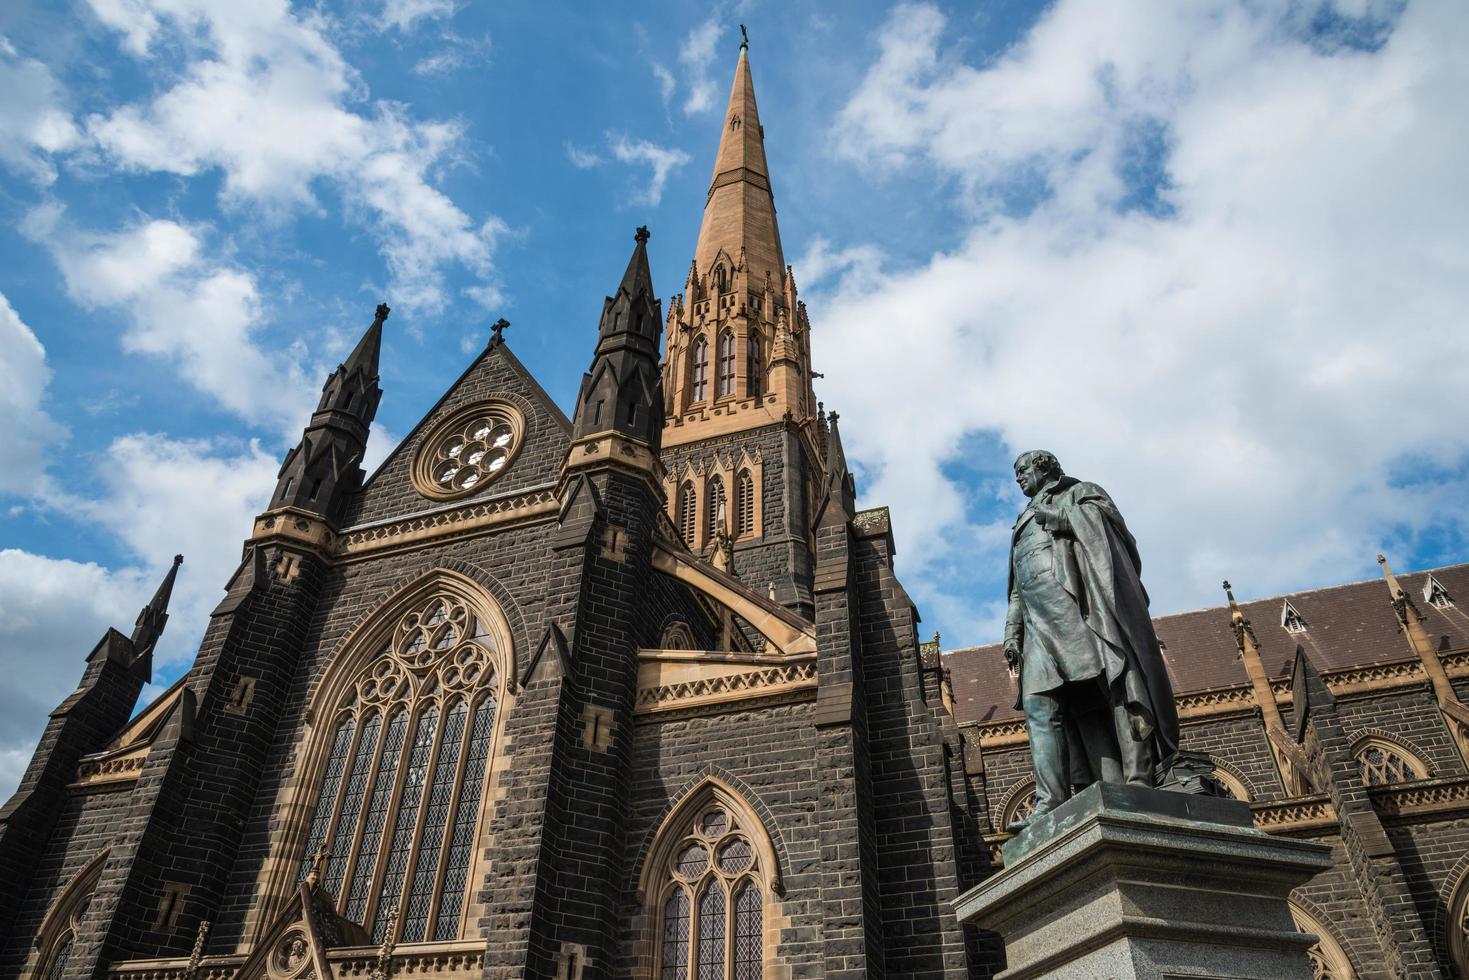 cathédrale saint patrick la plus grande église de melbourne, état de victoria en australie. l'église mère de l'archidiocèse catholique de melbourne. photo